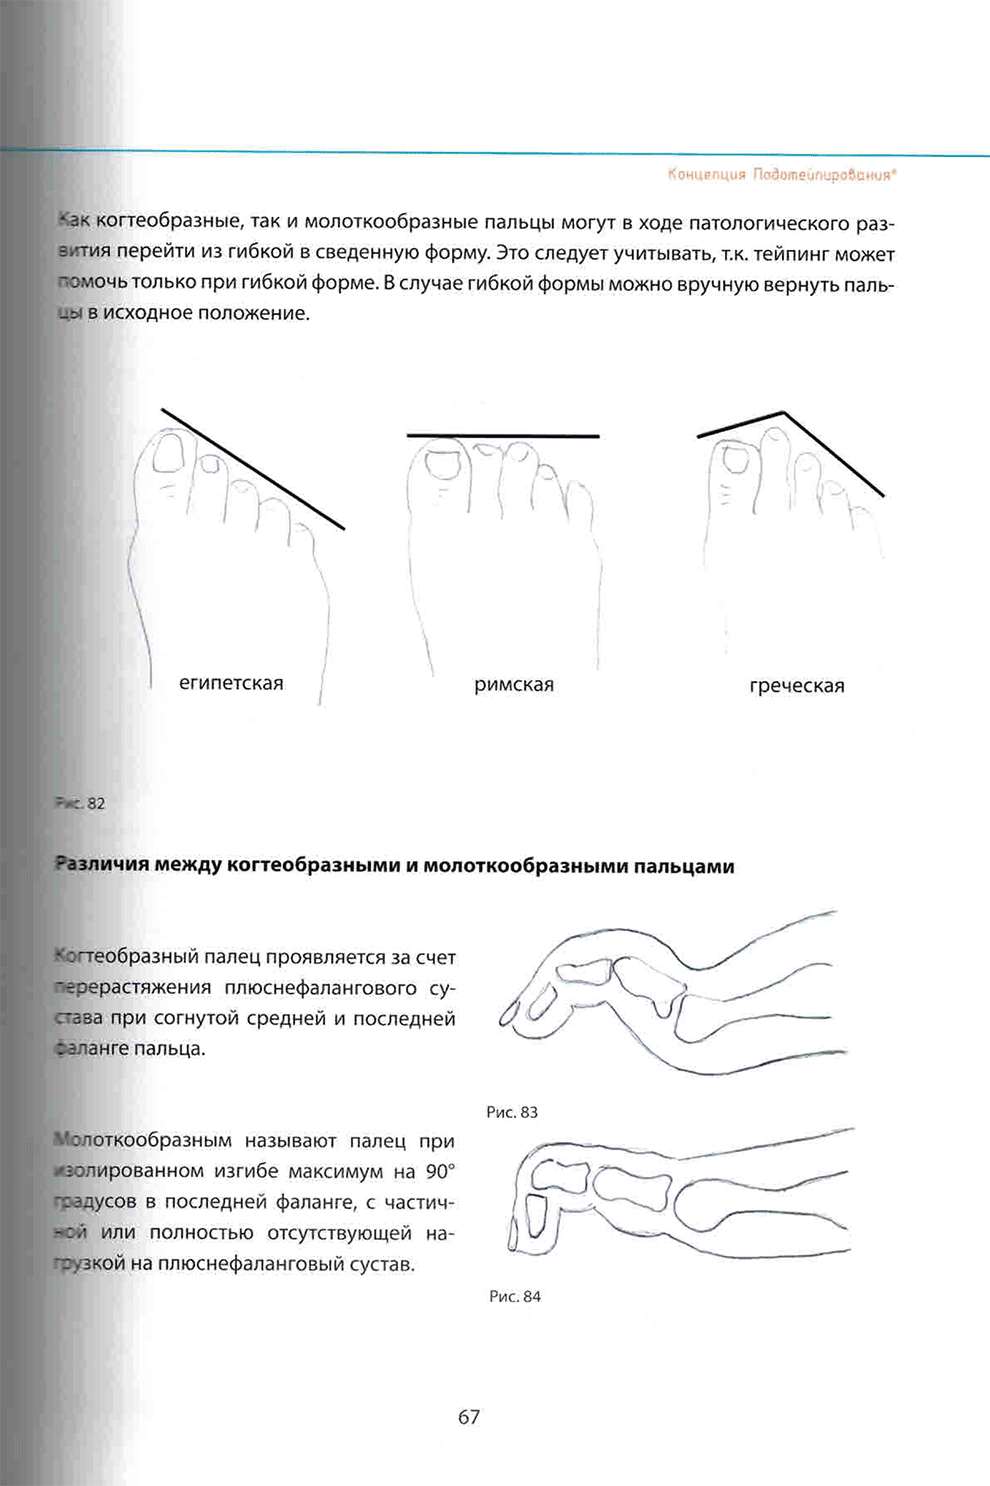 Различия между когтеобразными и молоткообразными пальцами